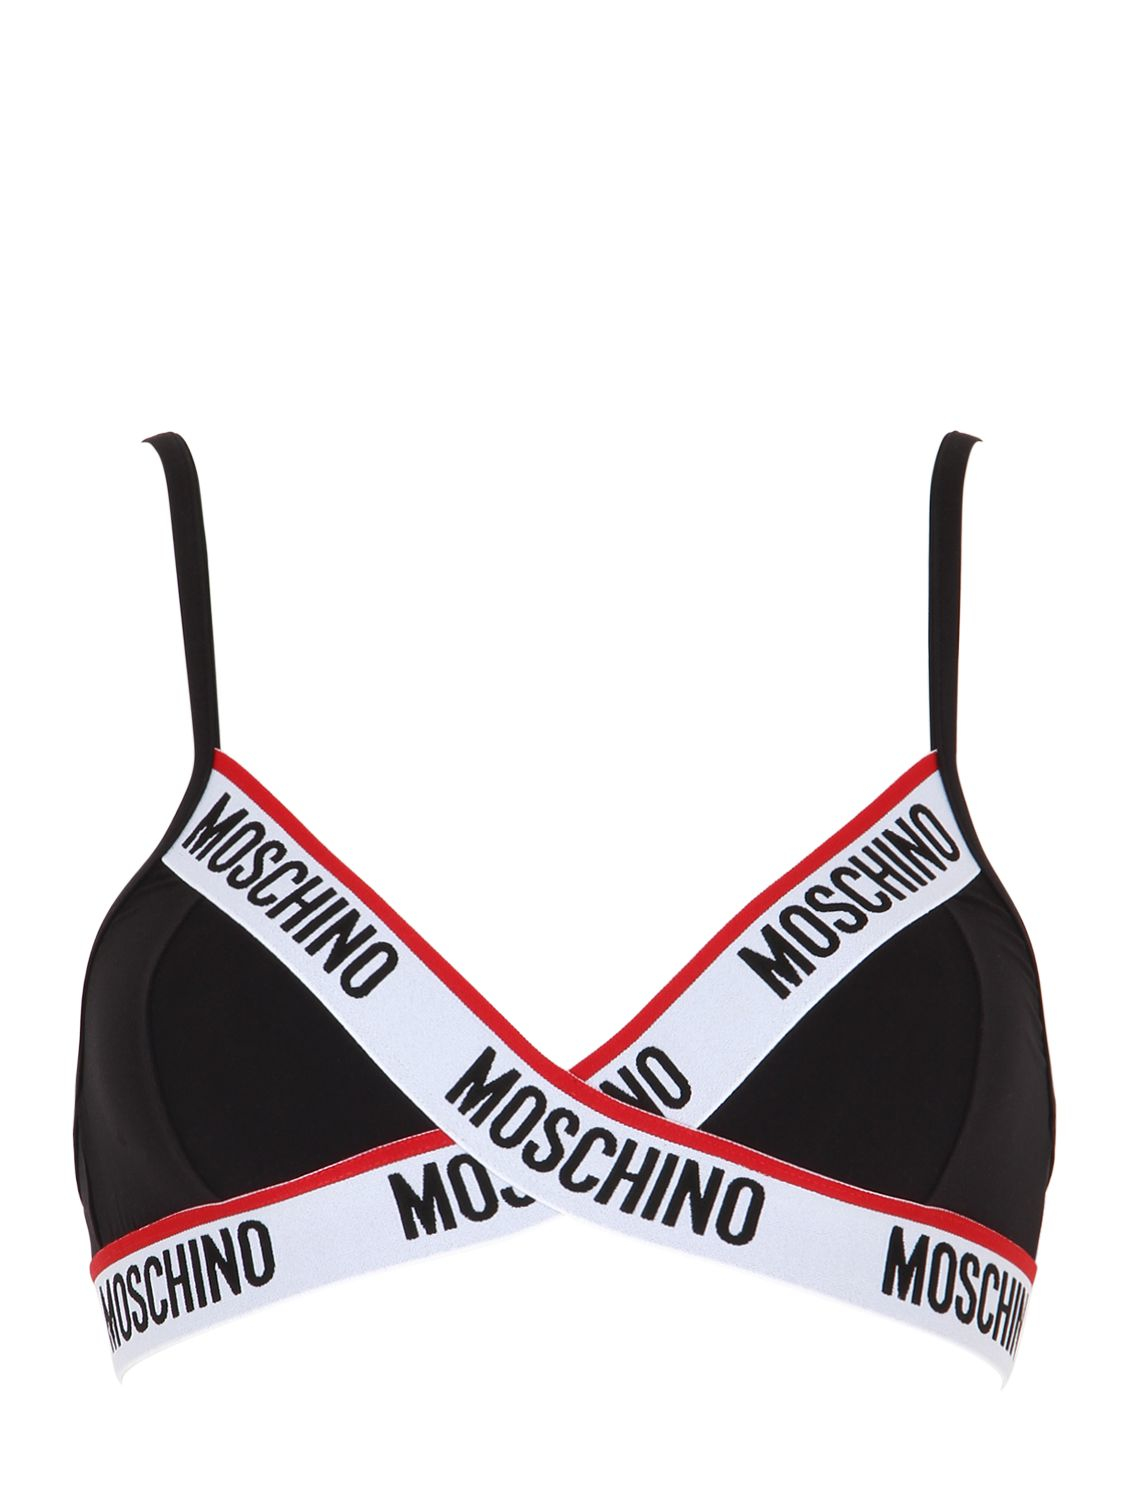 moschino bra and panties